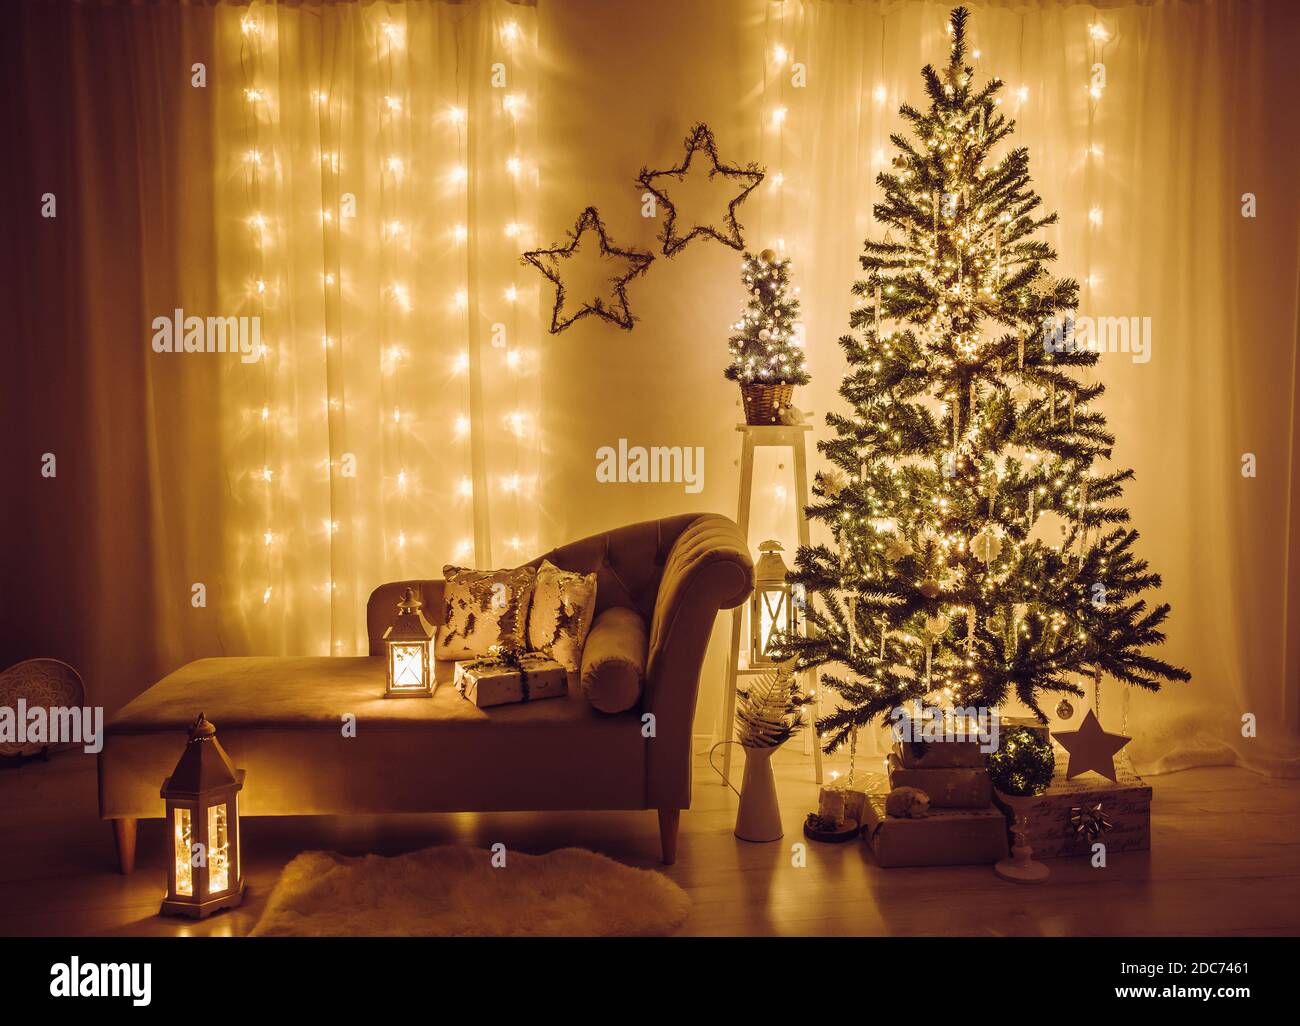 Heim Wohnzimmer für Heiligabend dekoriert. Weihnachtsfichte geschmückt mit Party-Lichter, Eiszapfen und Schneeflocken, eingewickelte Weihnachtsgeschenke. Stockfoto